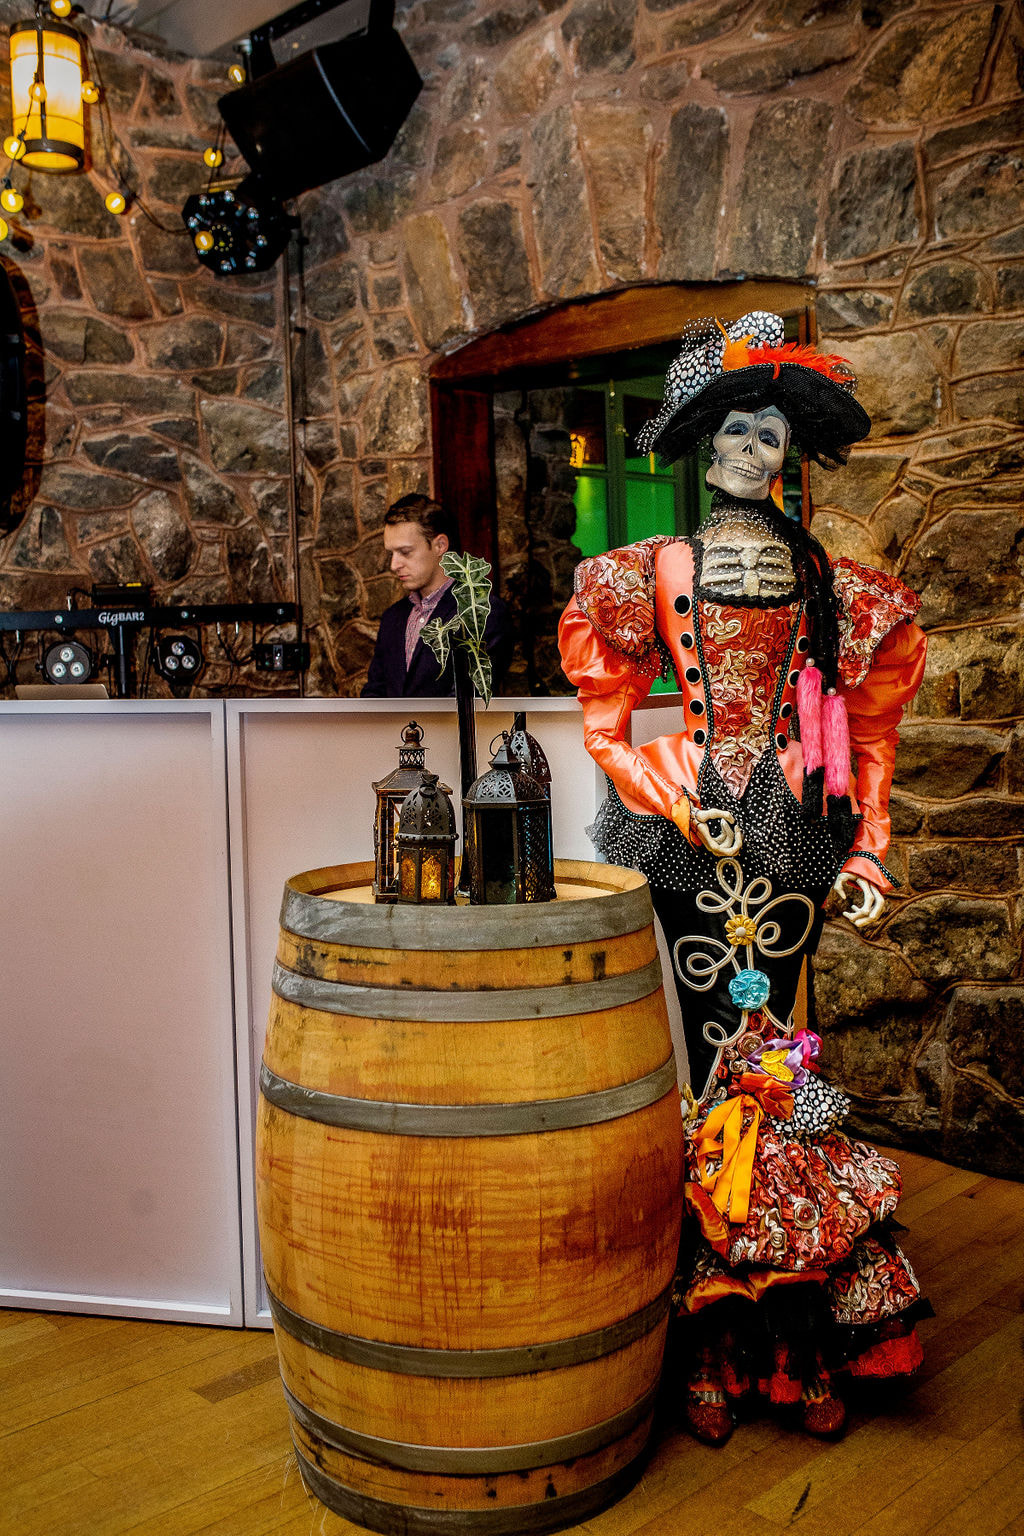 wine barrell decor and dia de los muertos lady skeleton prop